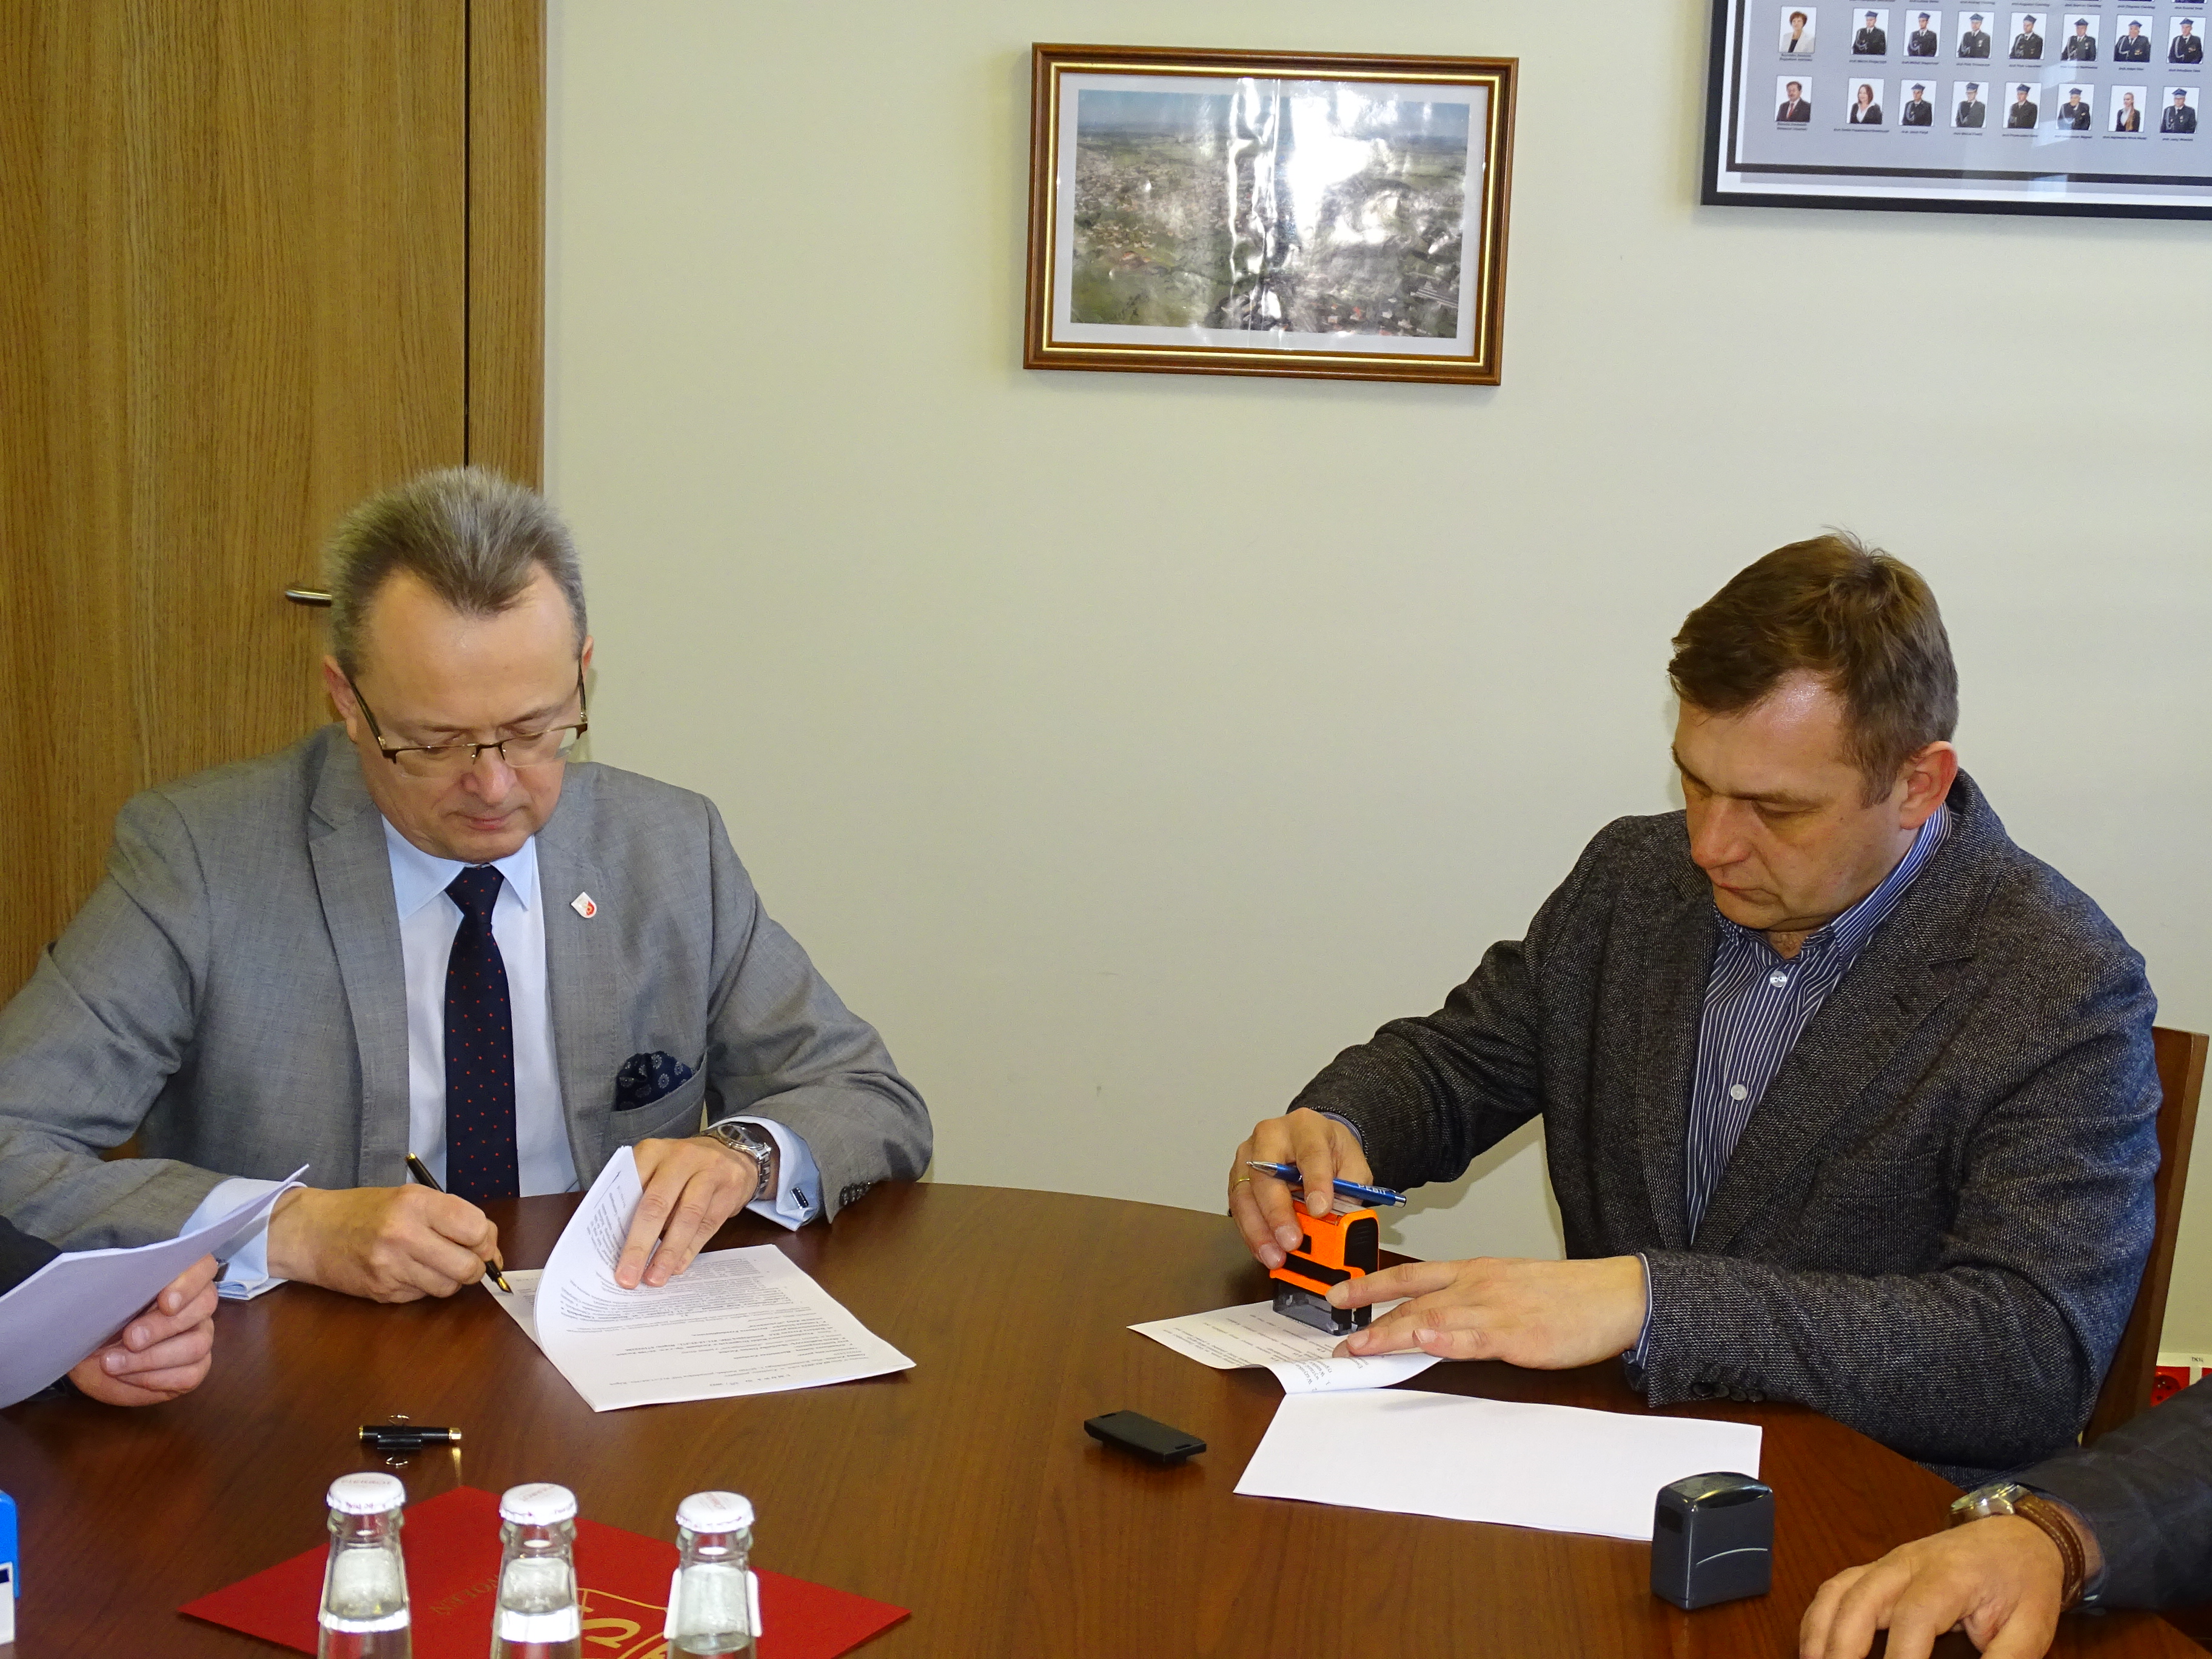 Umowę podpisują burmistrz Arkadiusz Sulima i dyrektor Tomasz Stolarek.